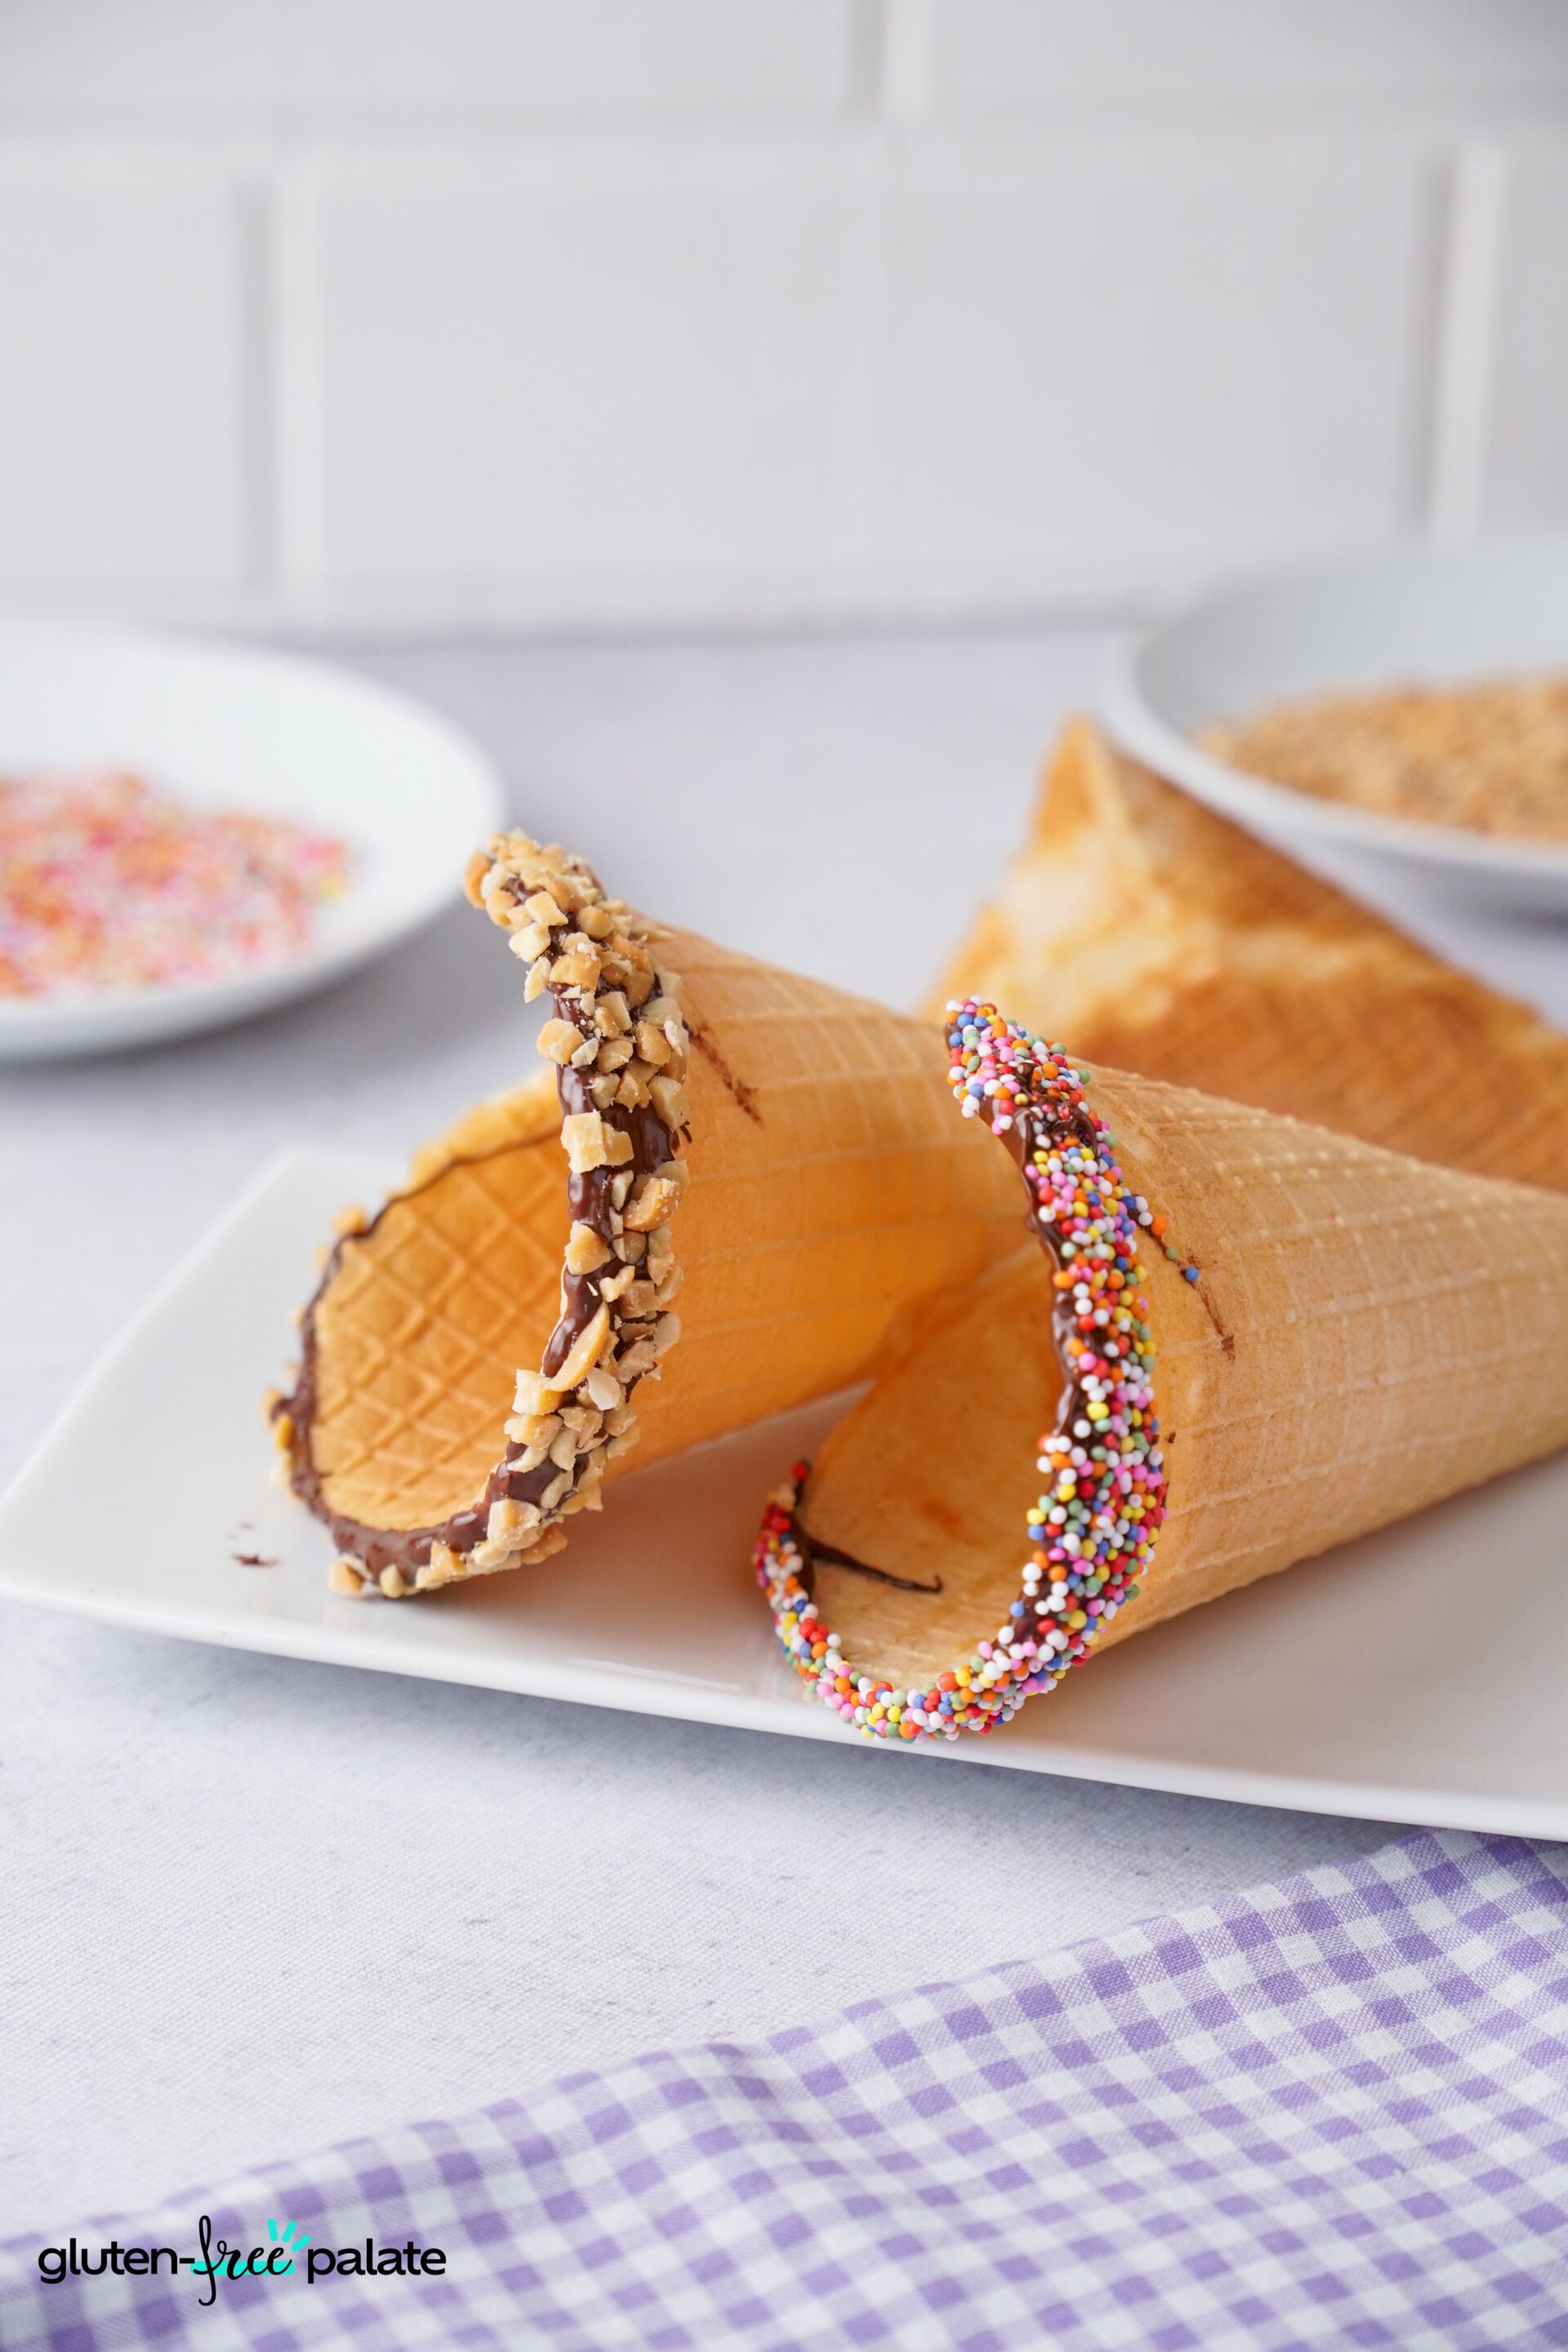 Gluten-free ice cream cones in a white plate